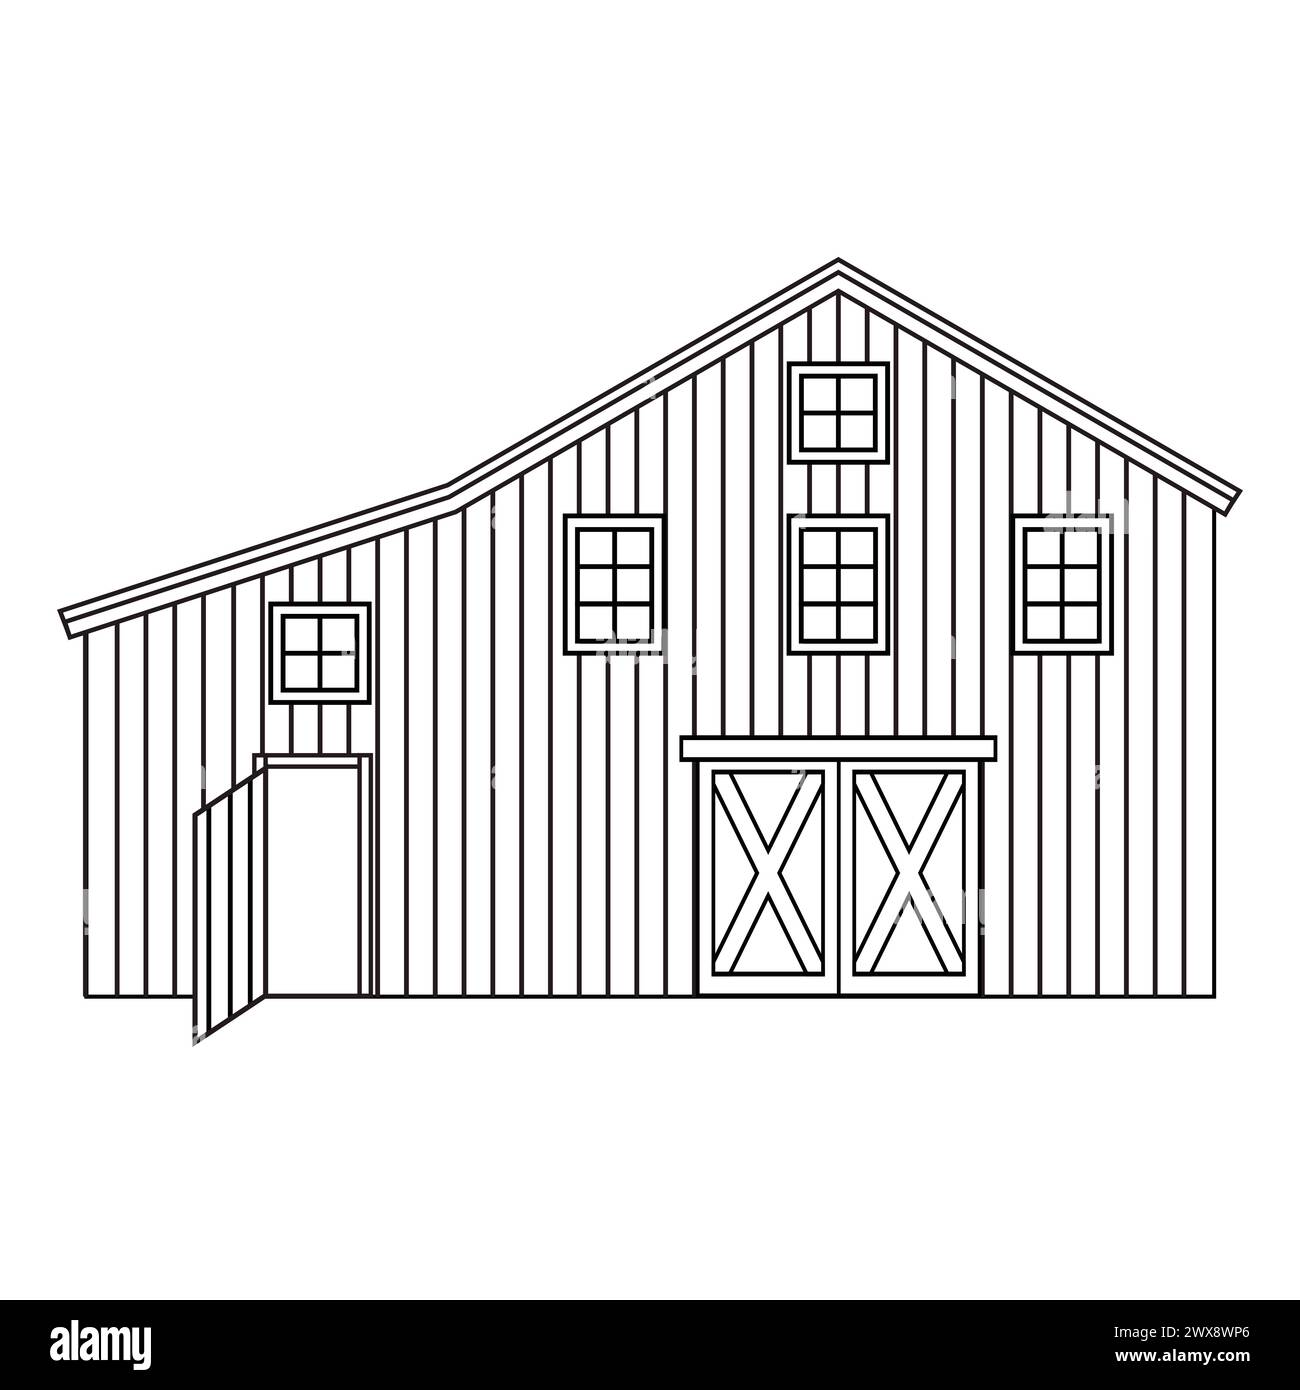 Casale o fienile in legno bianco e nero. Illustrazione vettoriale isolata dell'esterno dell'edificio del villaggio su sfondo bianco per colorare le pagine Illustrazione Vettoriale